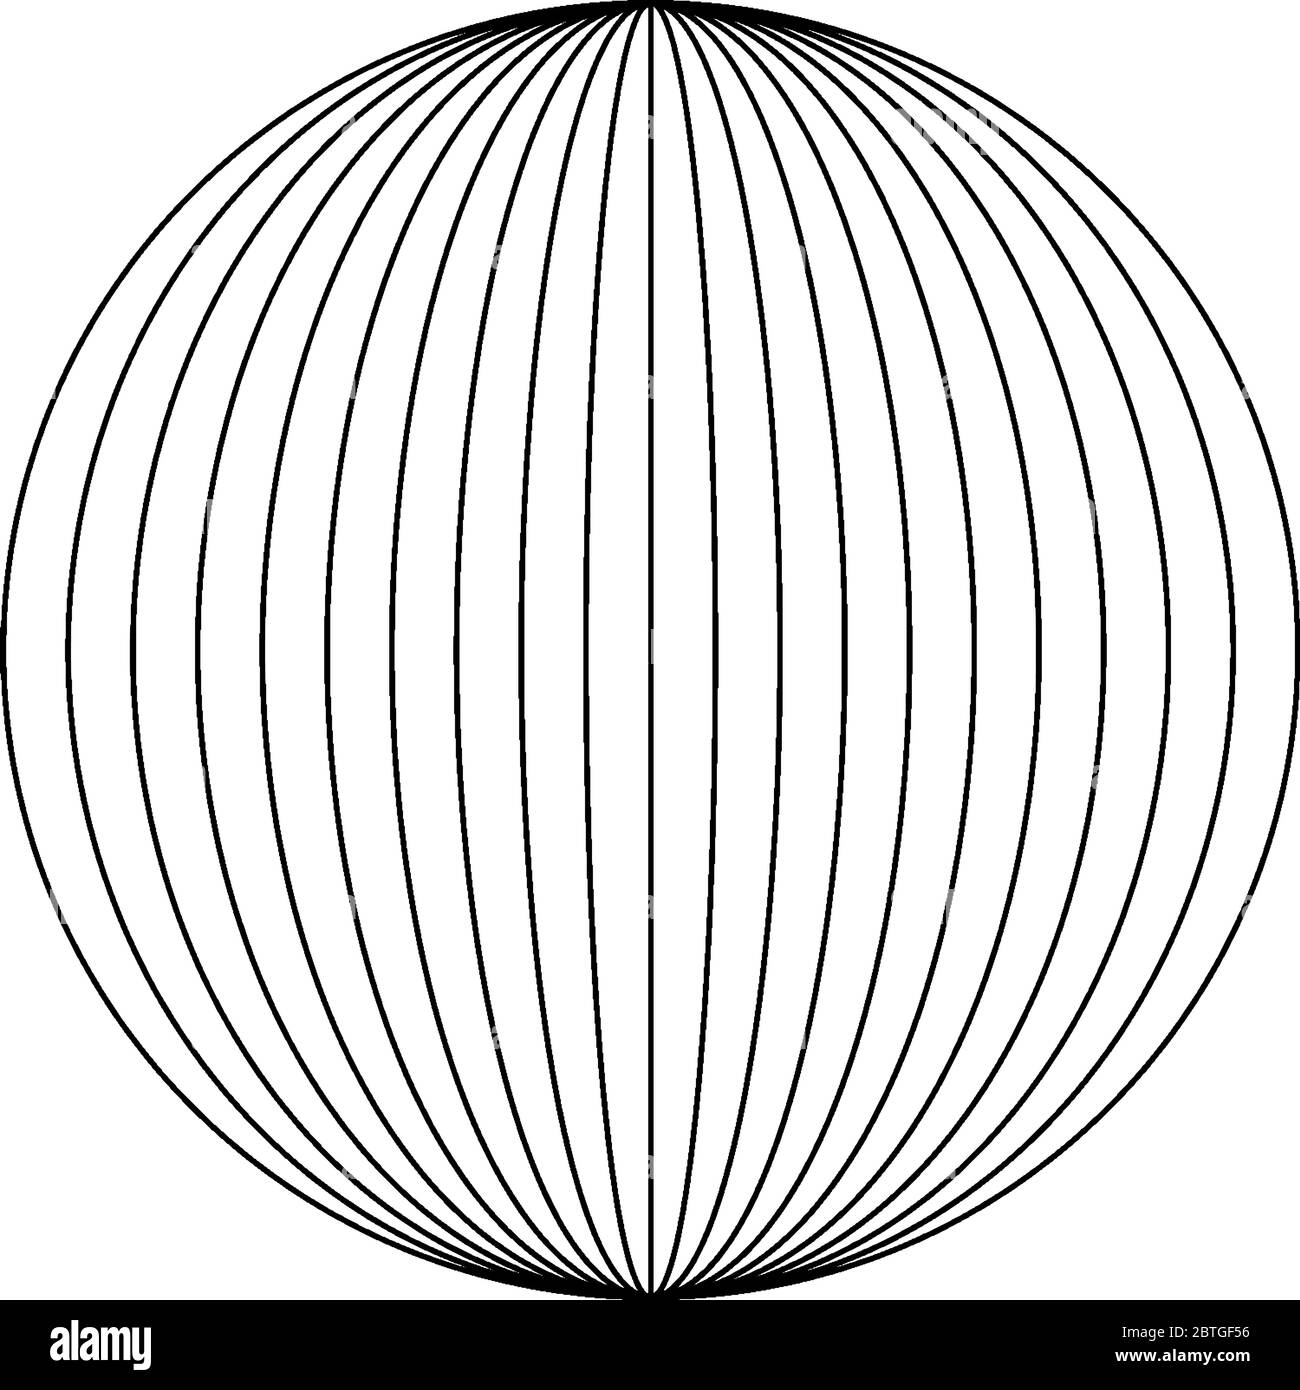 Neuf ellipses à l'intérieur D'UN cercle avec une ligne verticale au centre. L'axe principal des ellipses est l'axe vertical, le dessin de ligne vintage ou la gravure il Illustration de Vecteur